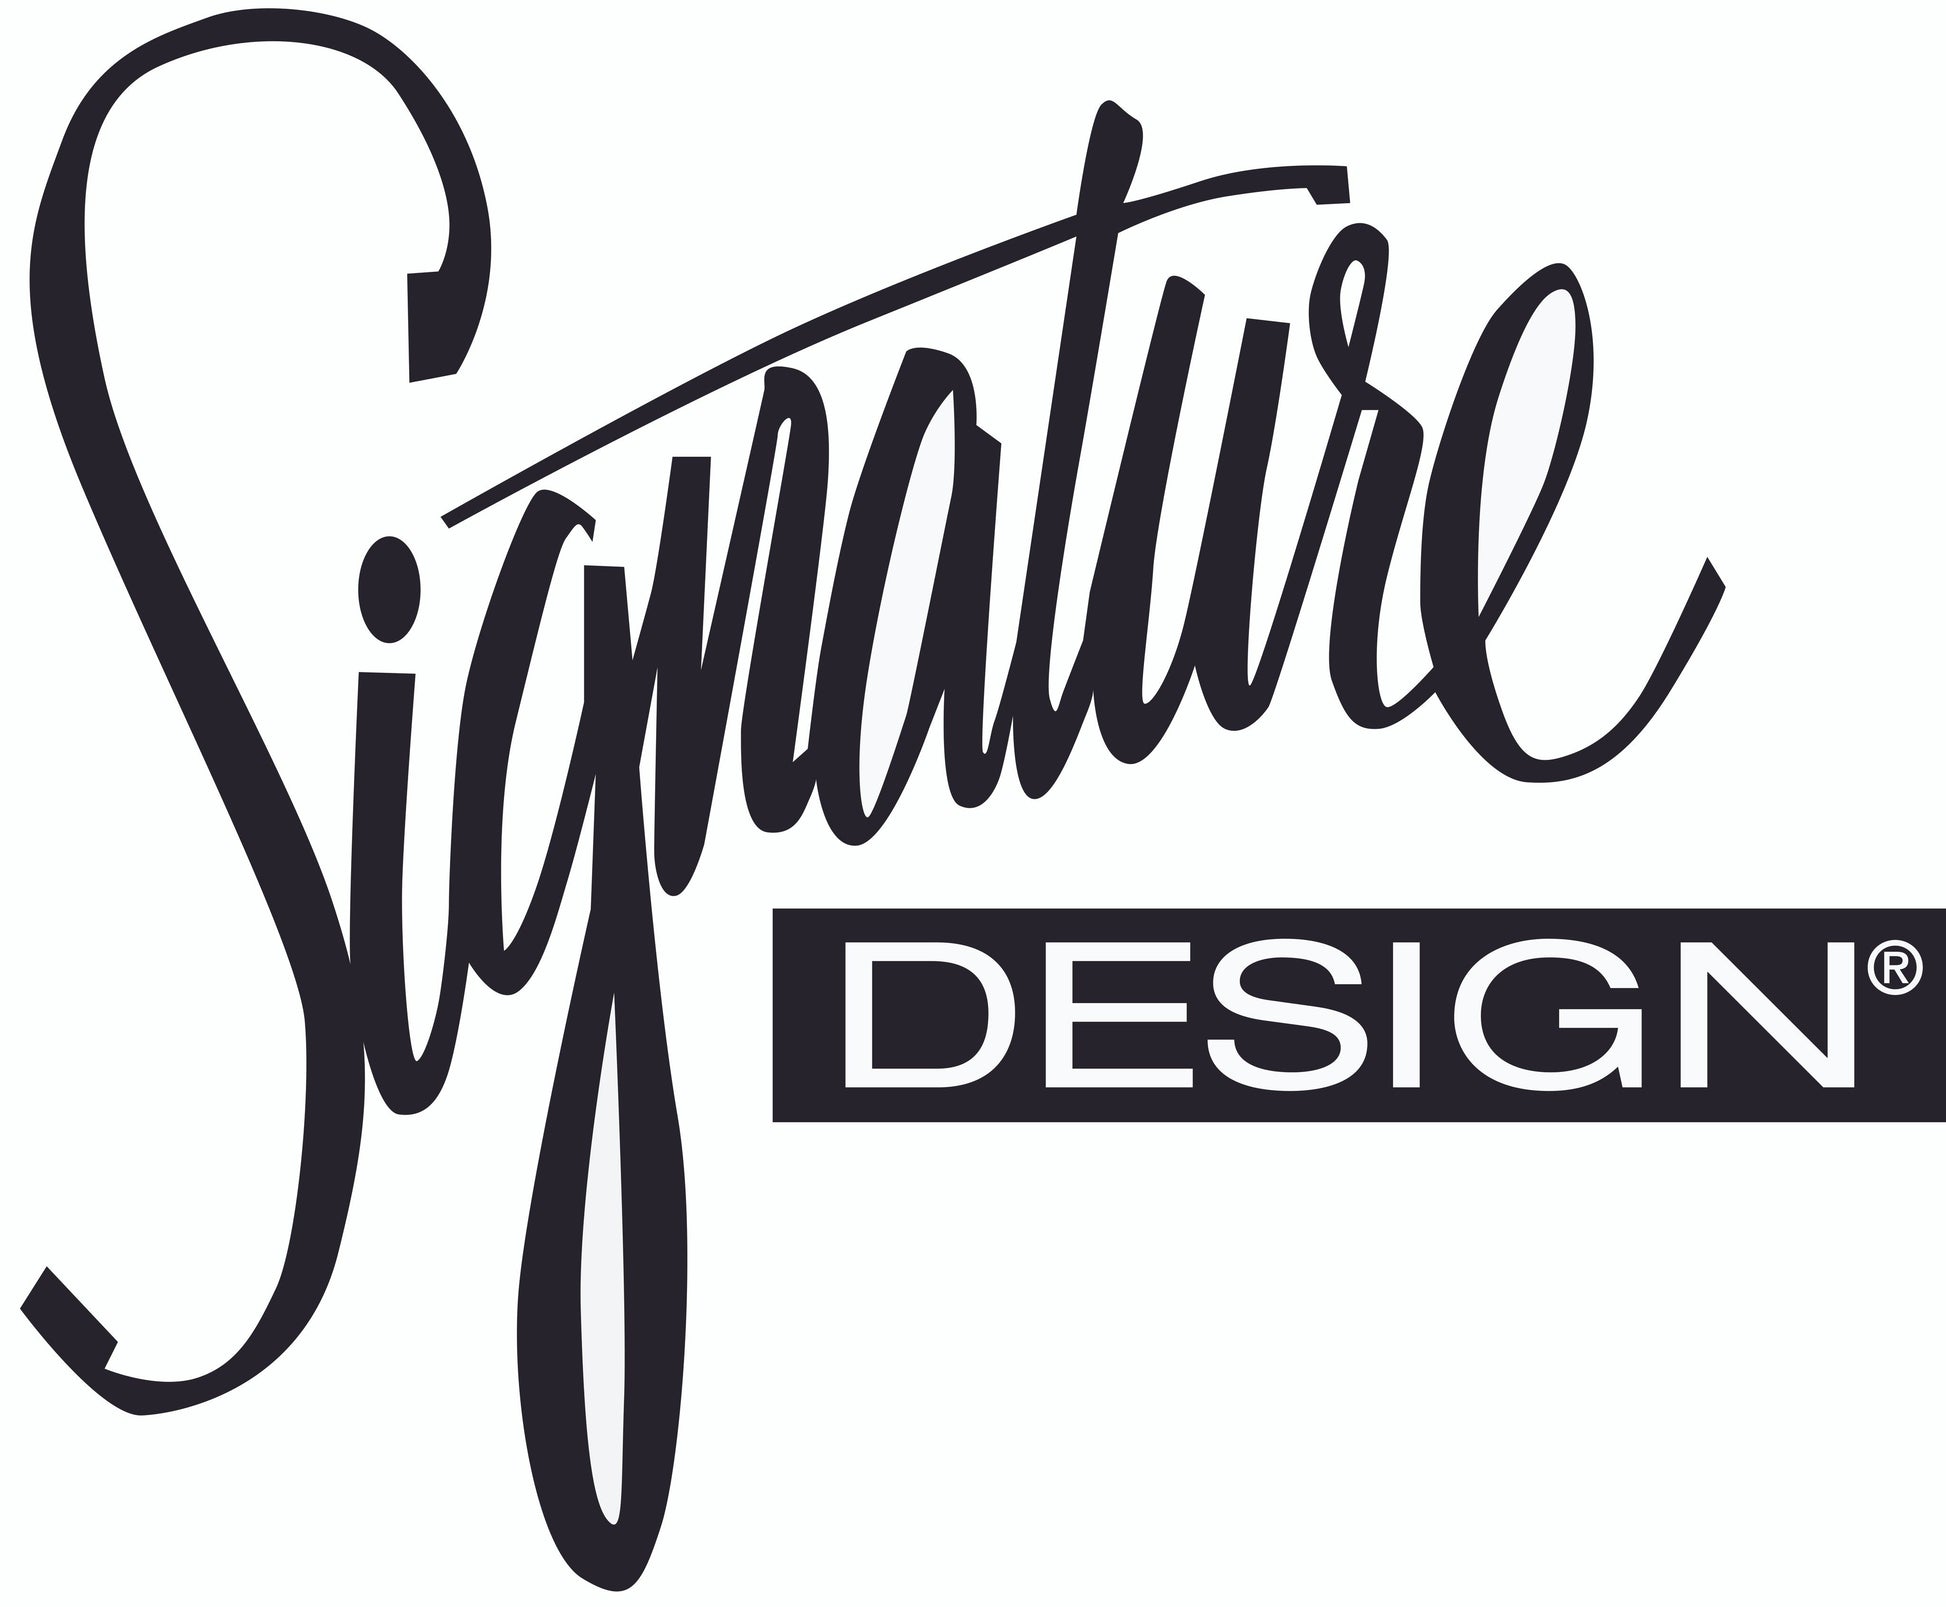 Valerano Sofa Signature Design by Ashley®